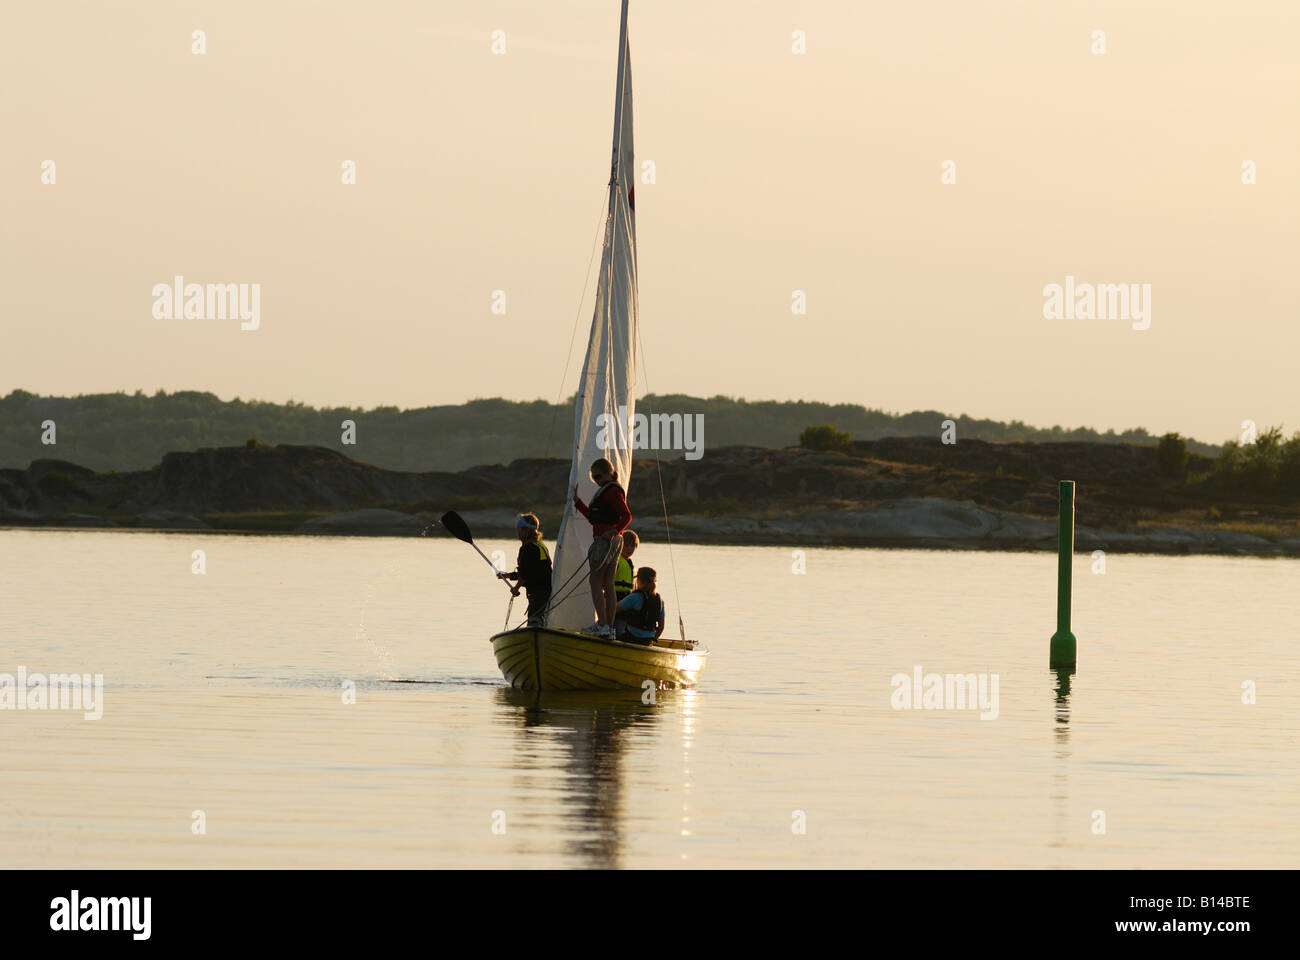 Sailing boat at dusk, Sweden, west coast Stock Photo